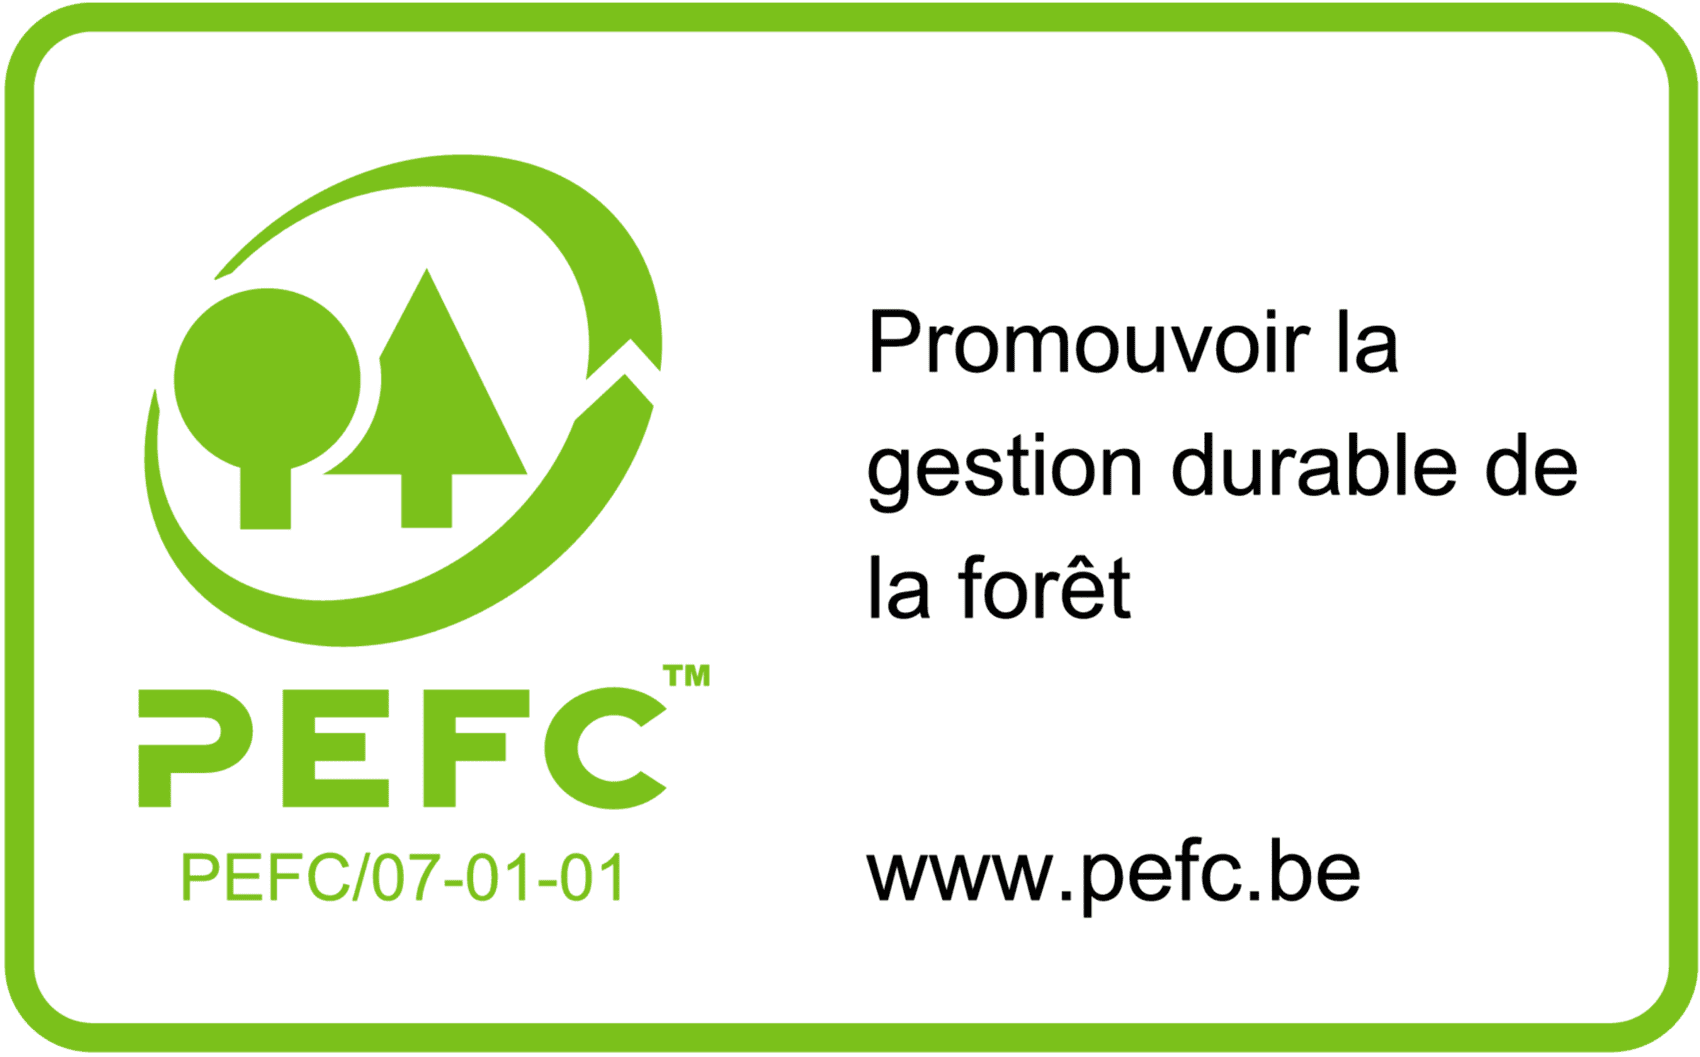 PEFC - promouvoir la gestion durable de la forêt